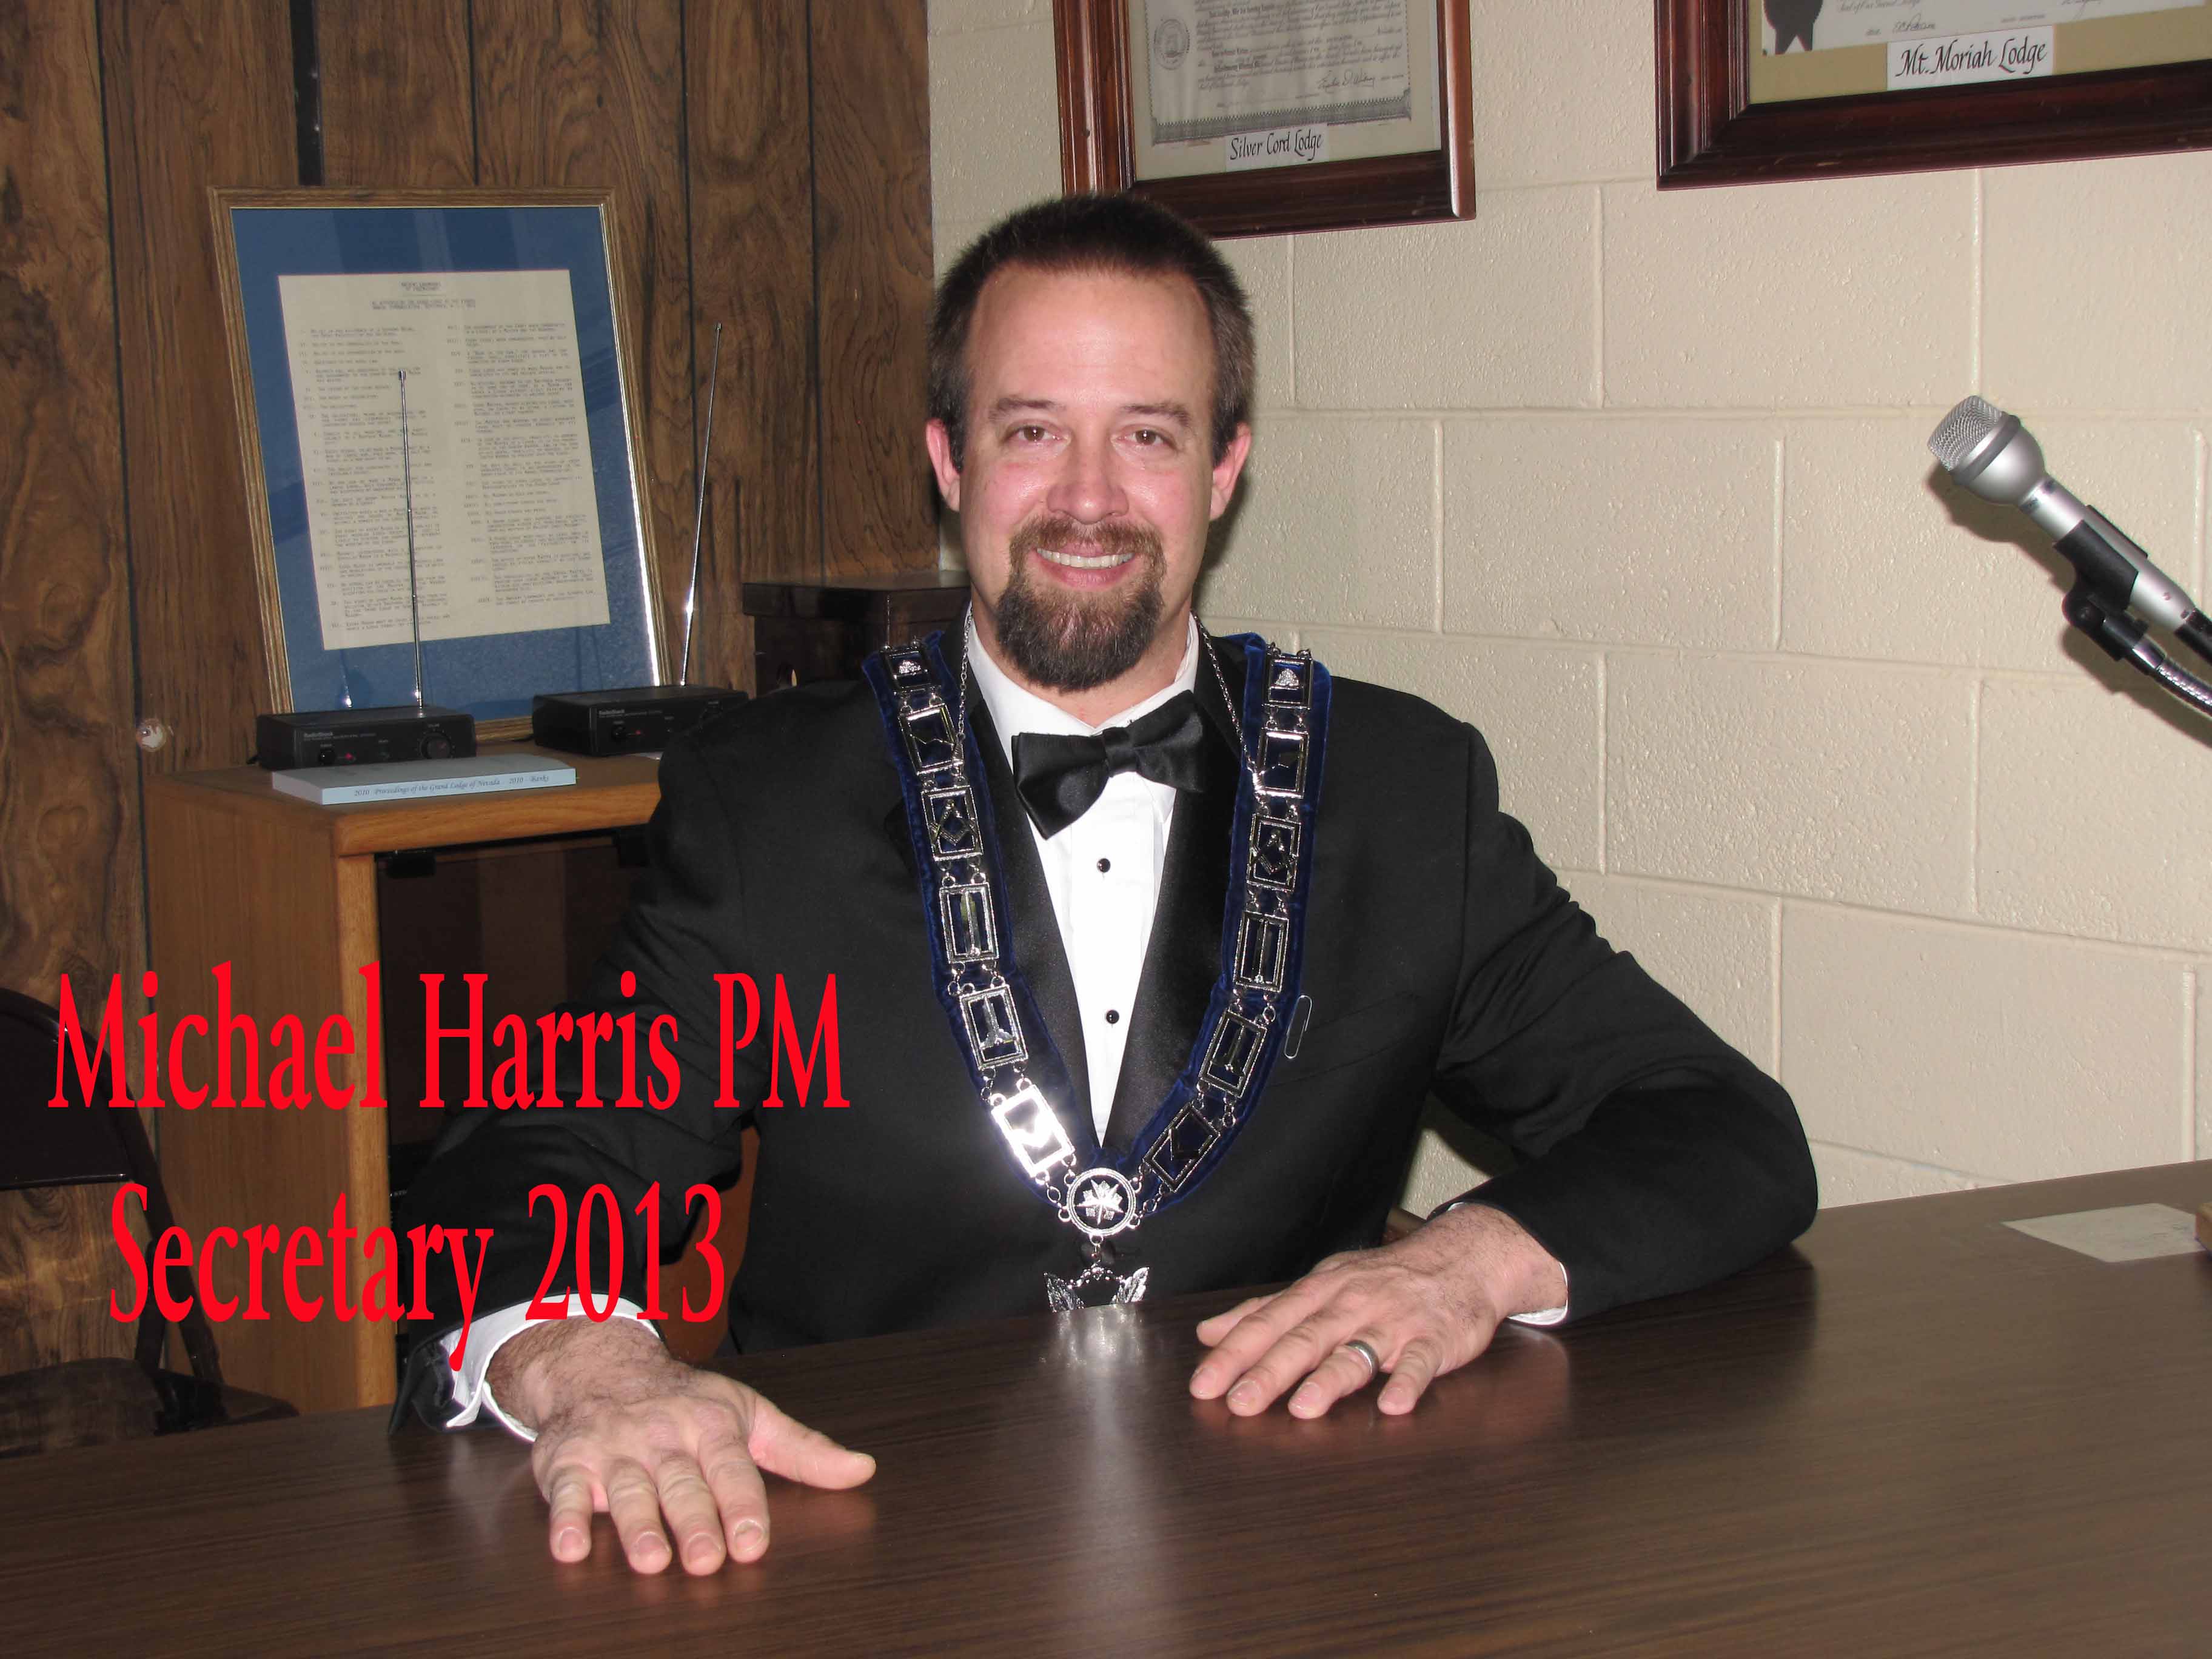 WB Mike Harris, PM, Secretary 2013